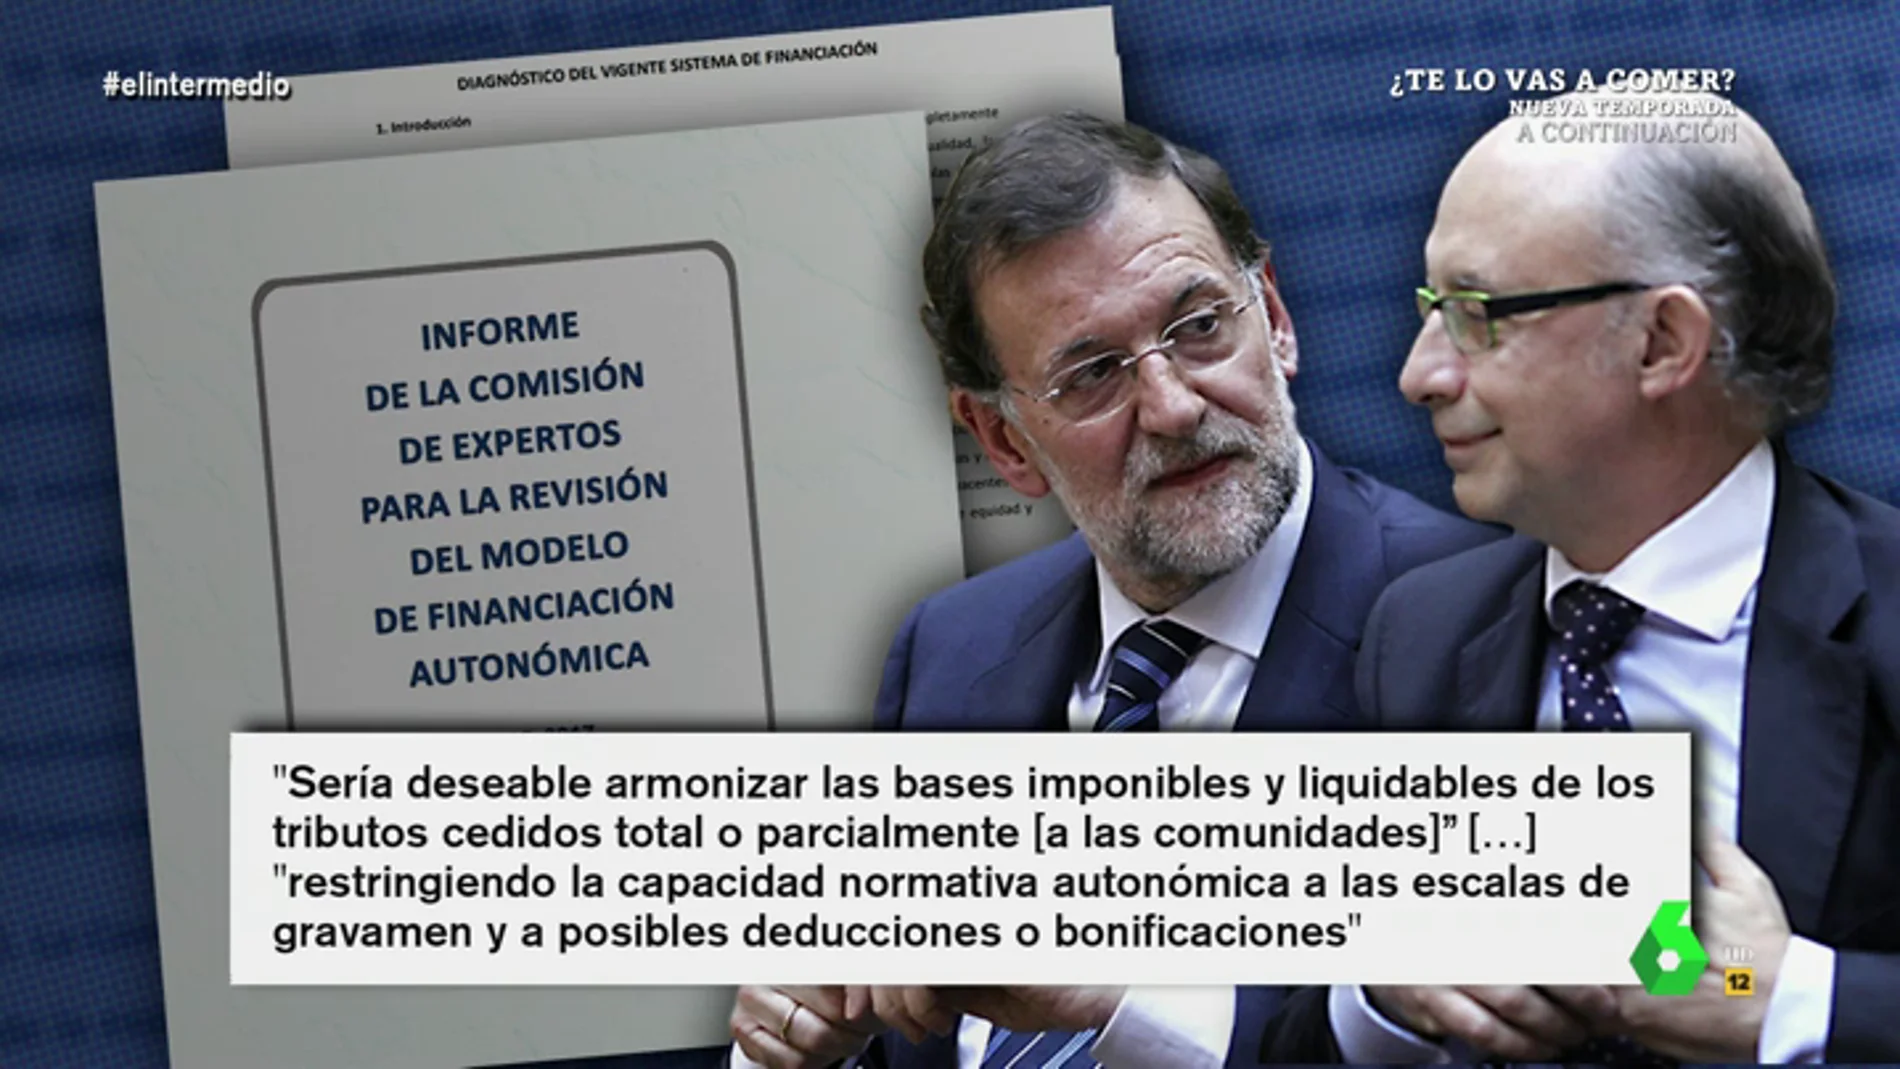 La tajante respuesta de Wyoming a Almeida tras hablar de "la cobardía" de Sánchez: "Rajoy también quería acabar con el dumping"